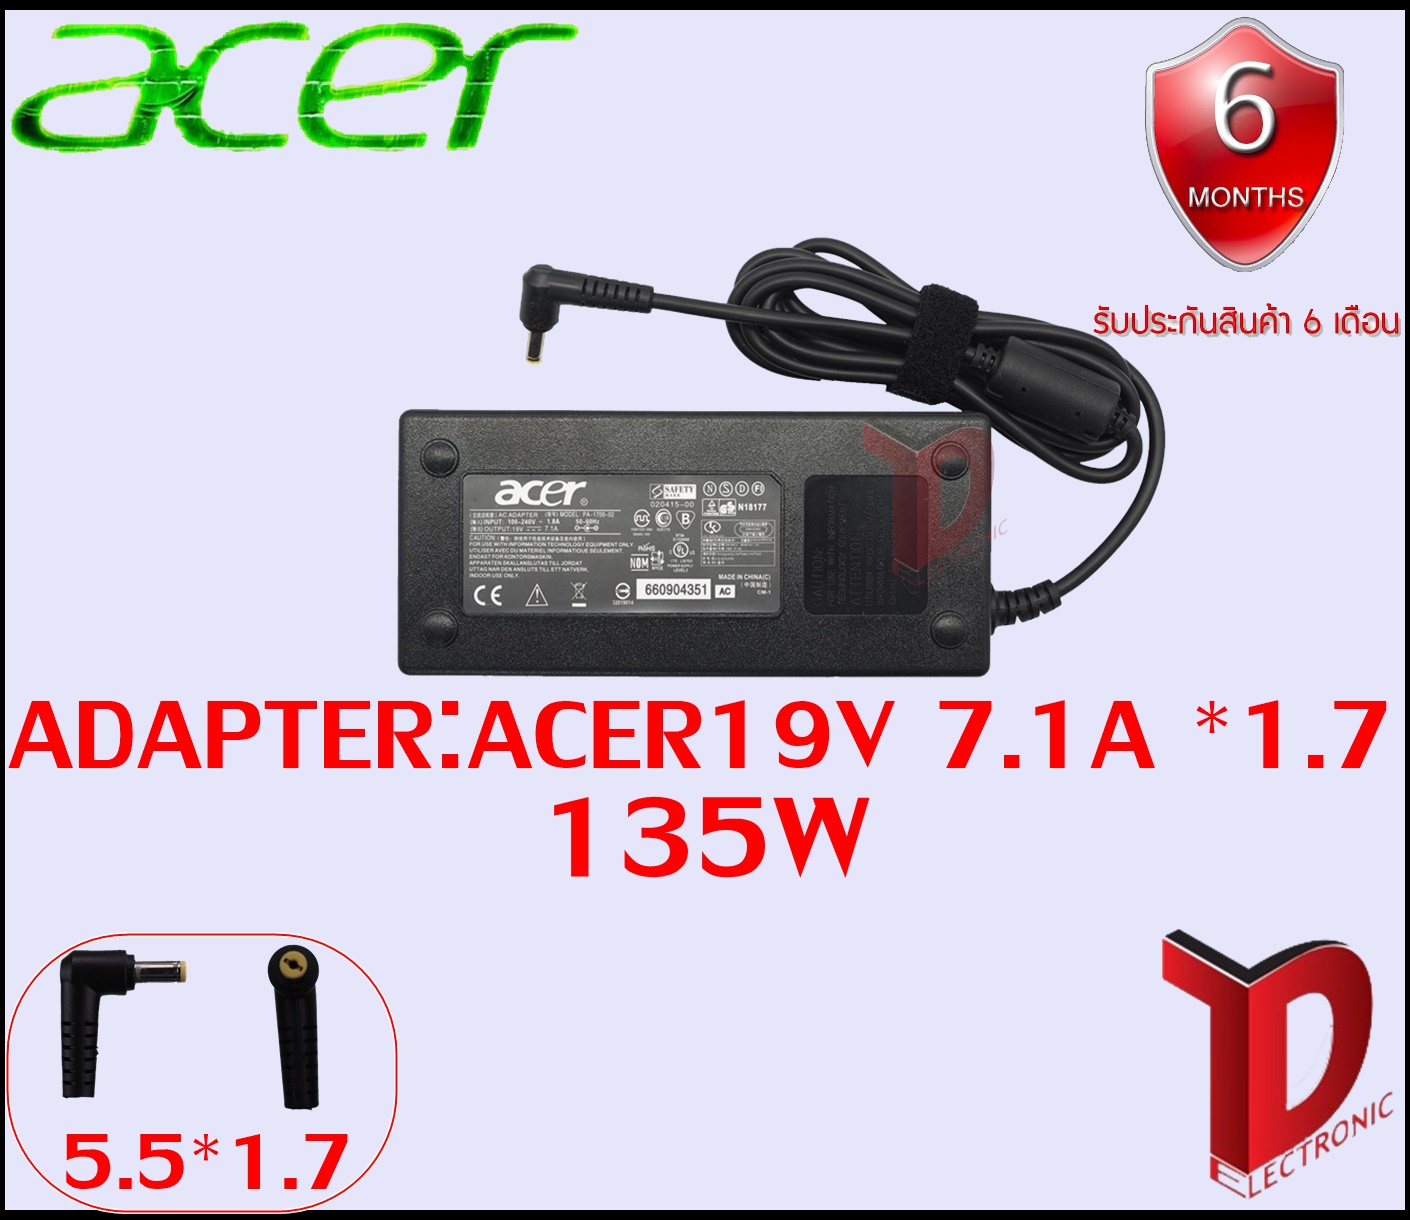 ภาพที่ให้รายละเอียดเกี่ยวกับ Adapter Acer 19v 7.1a *5.5x1.7 / อะแดปเตอร์  Acer 19v 7.1a *5.5x1.7